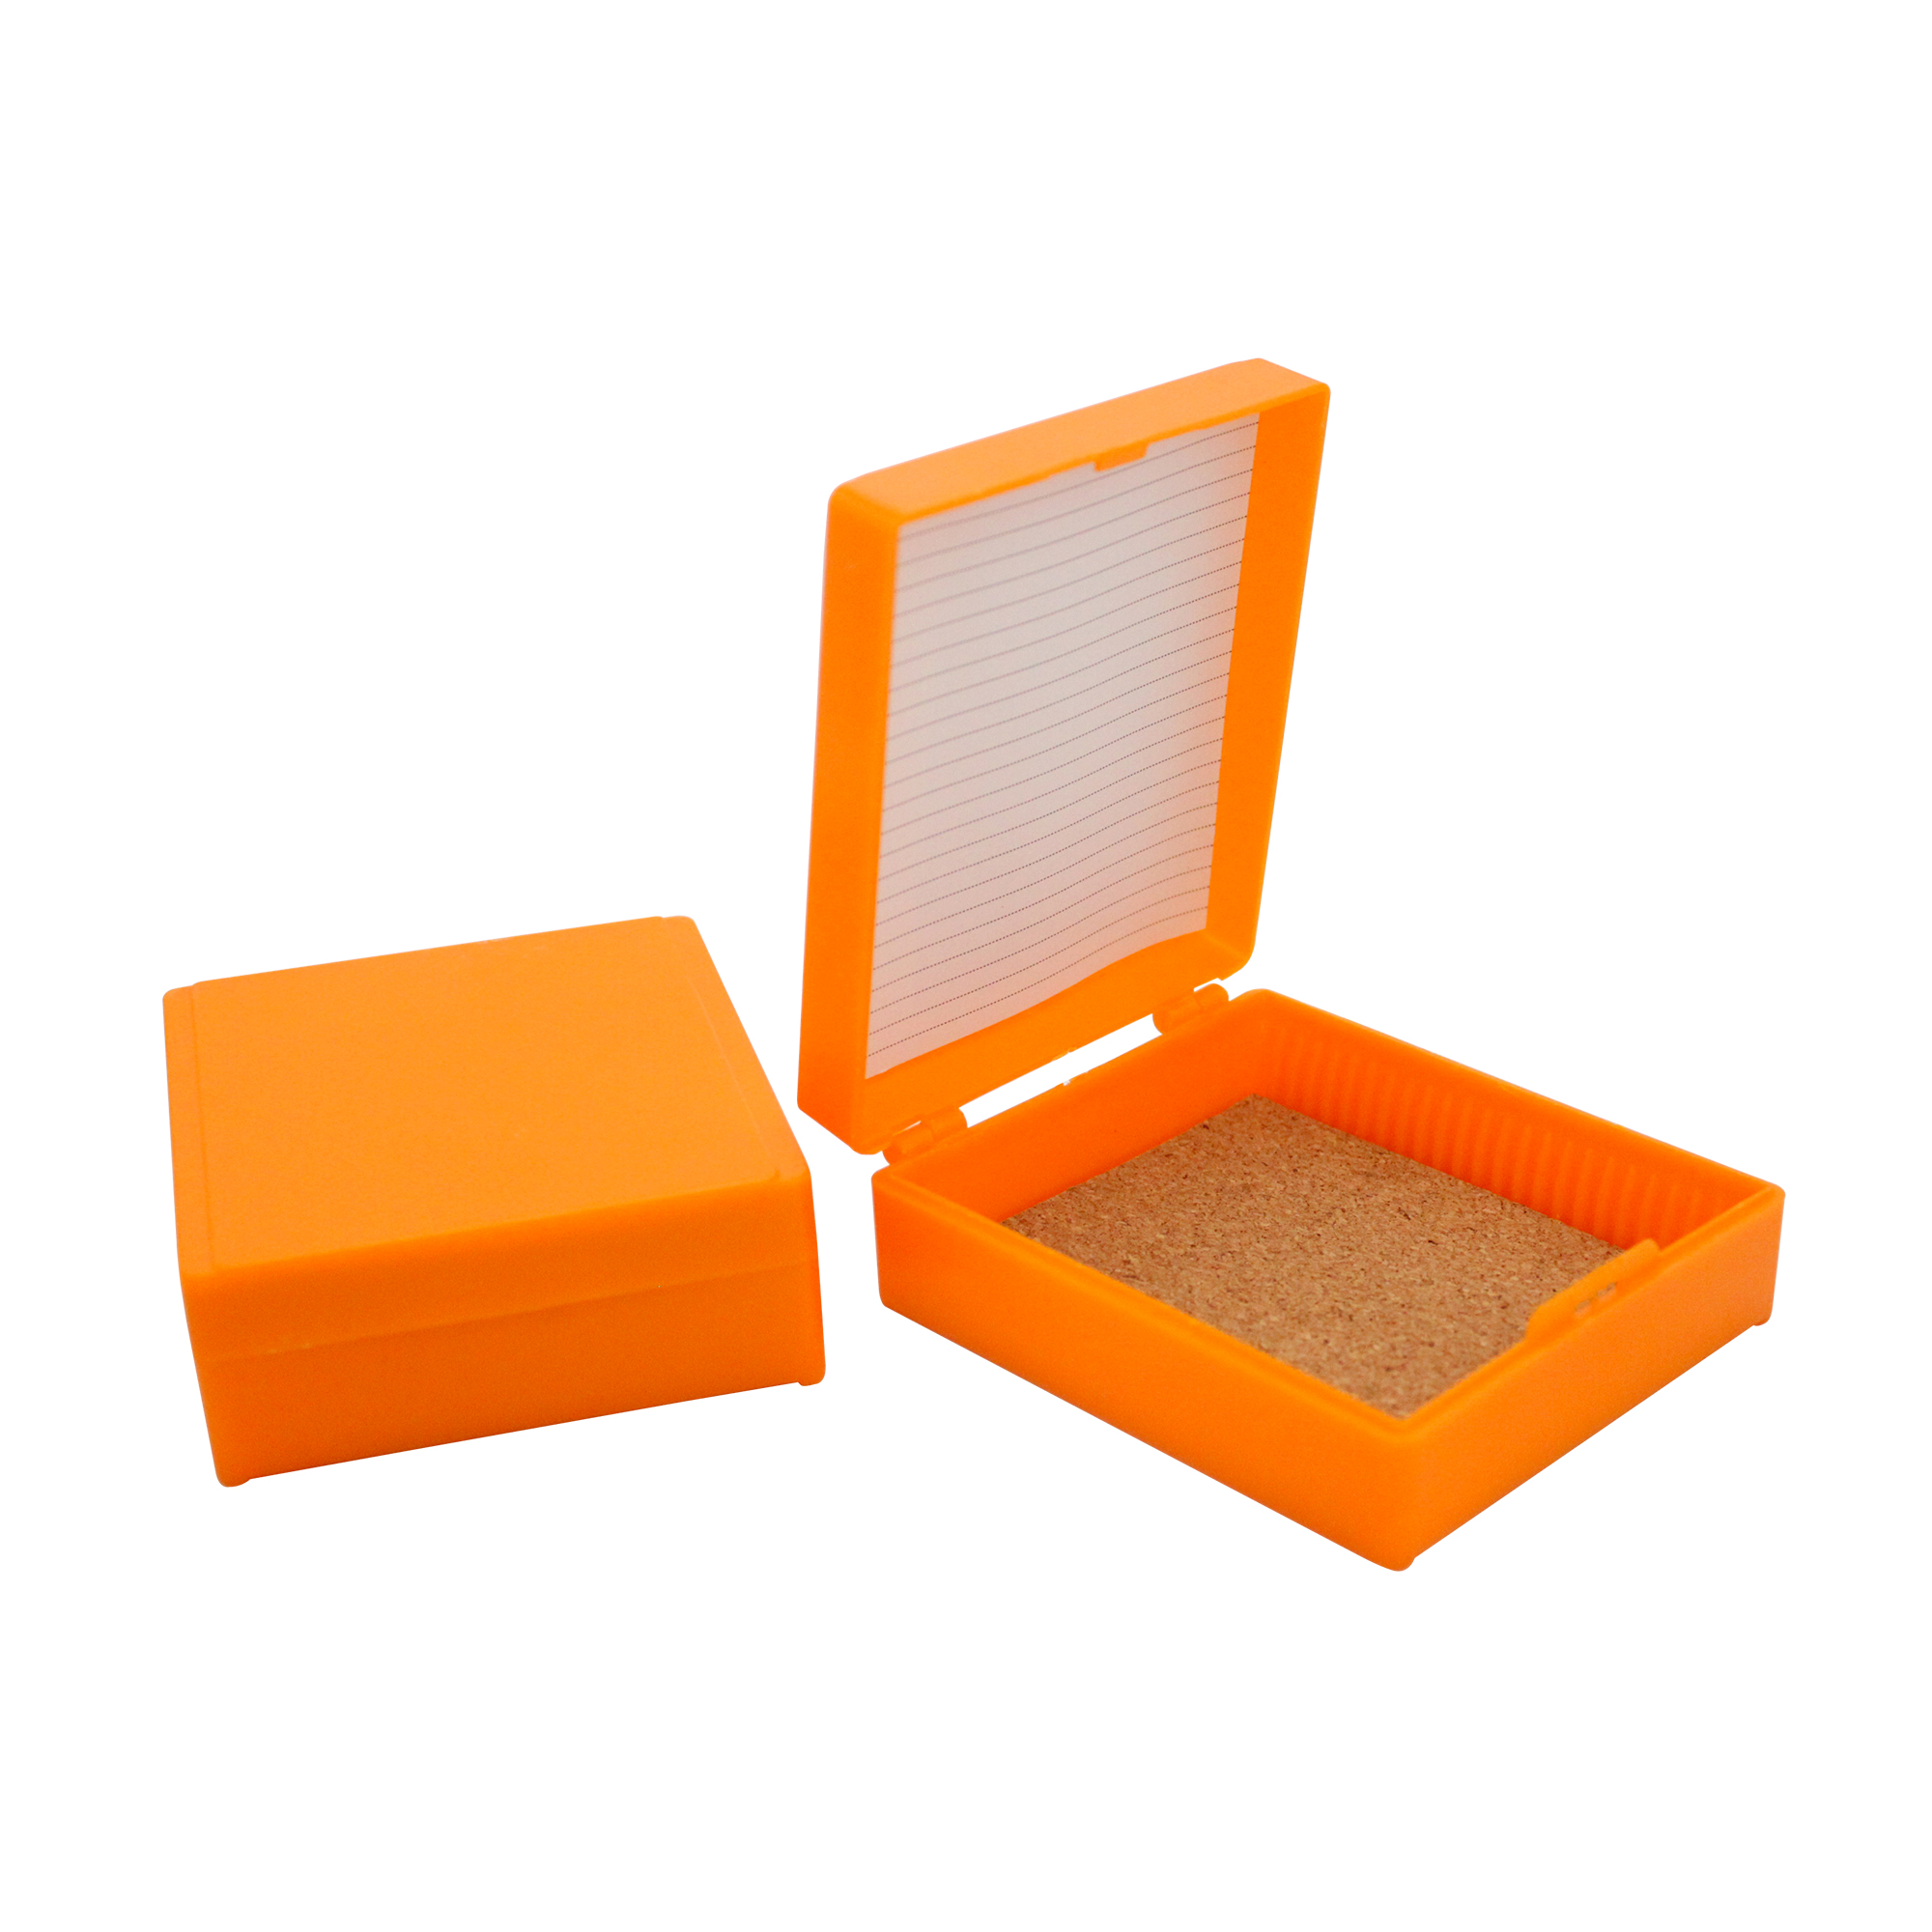 25片装载玻片存储盒,橘色